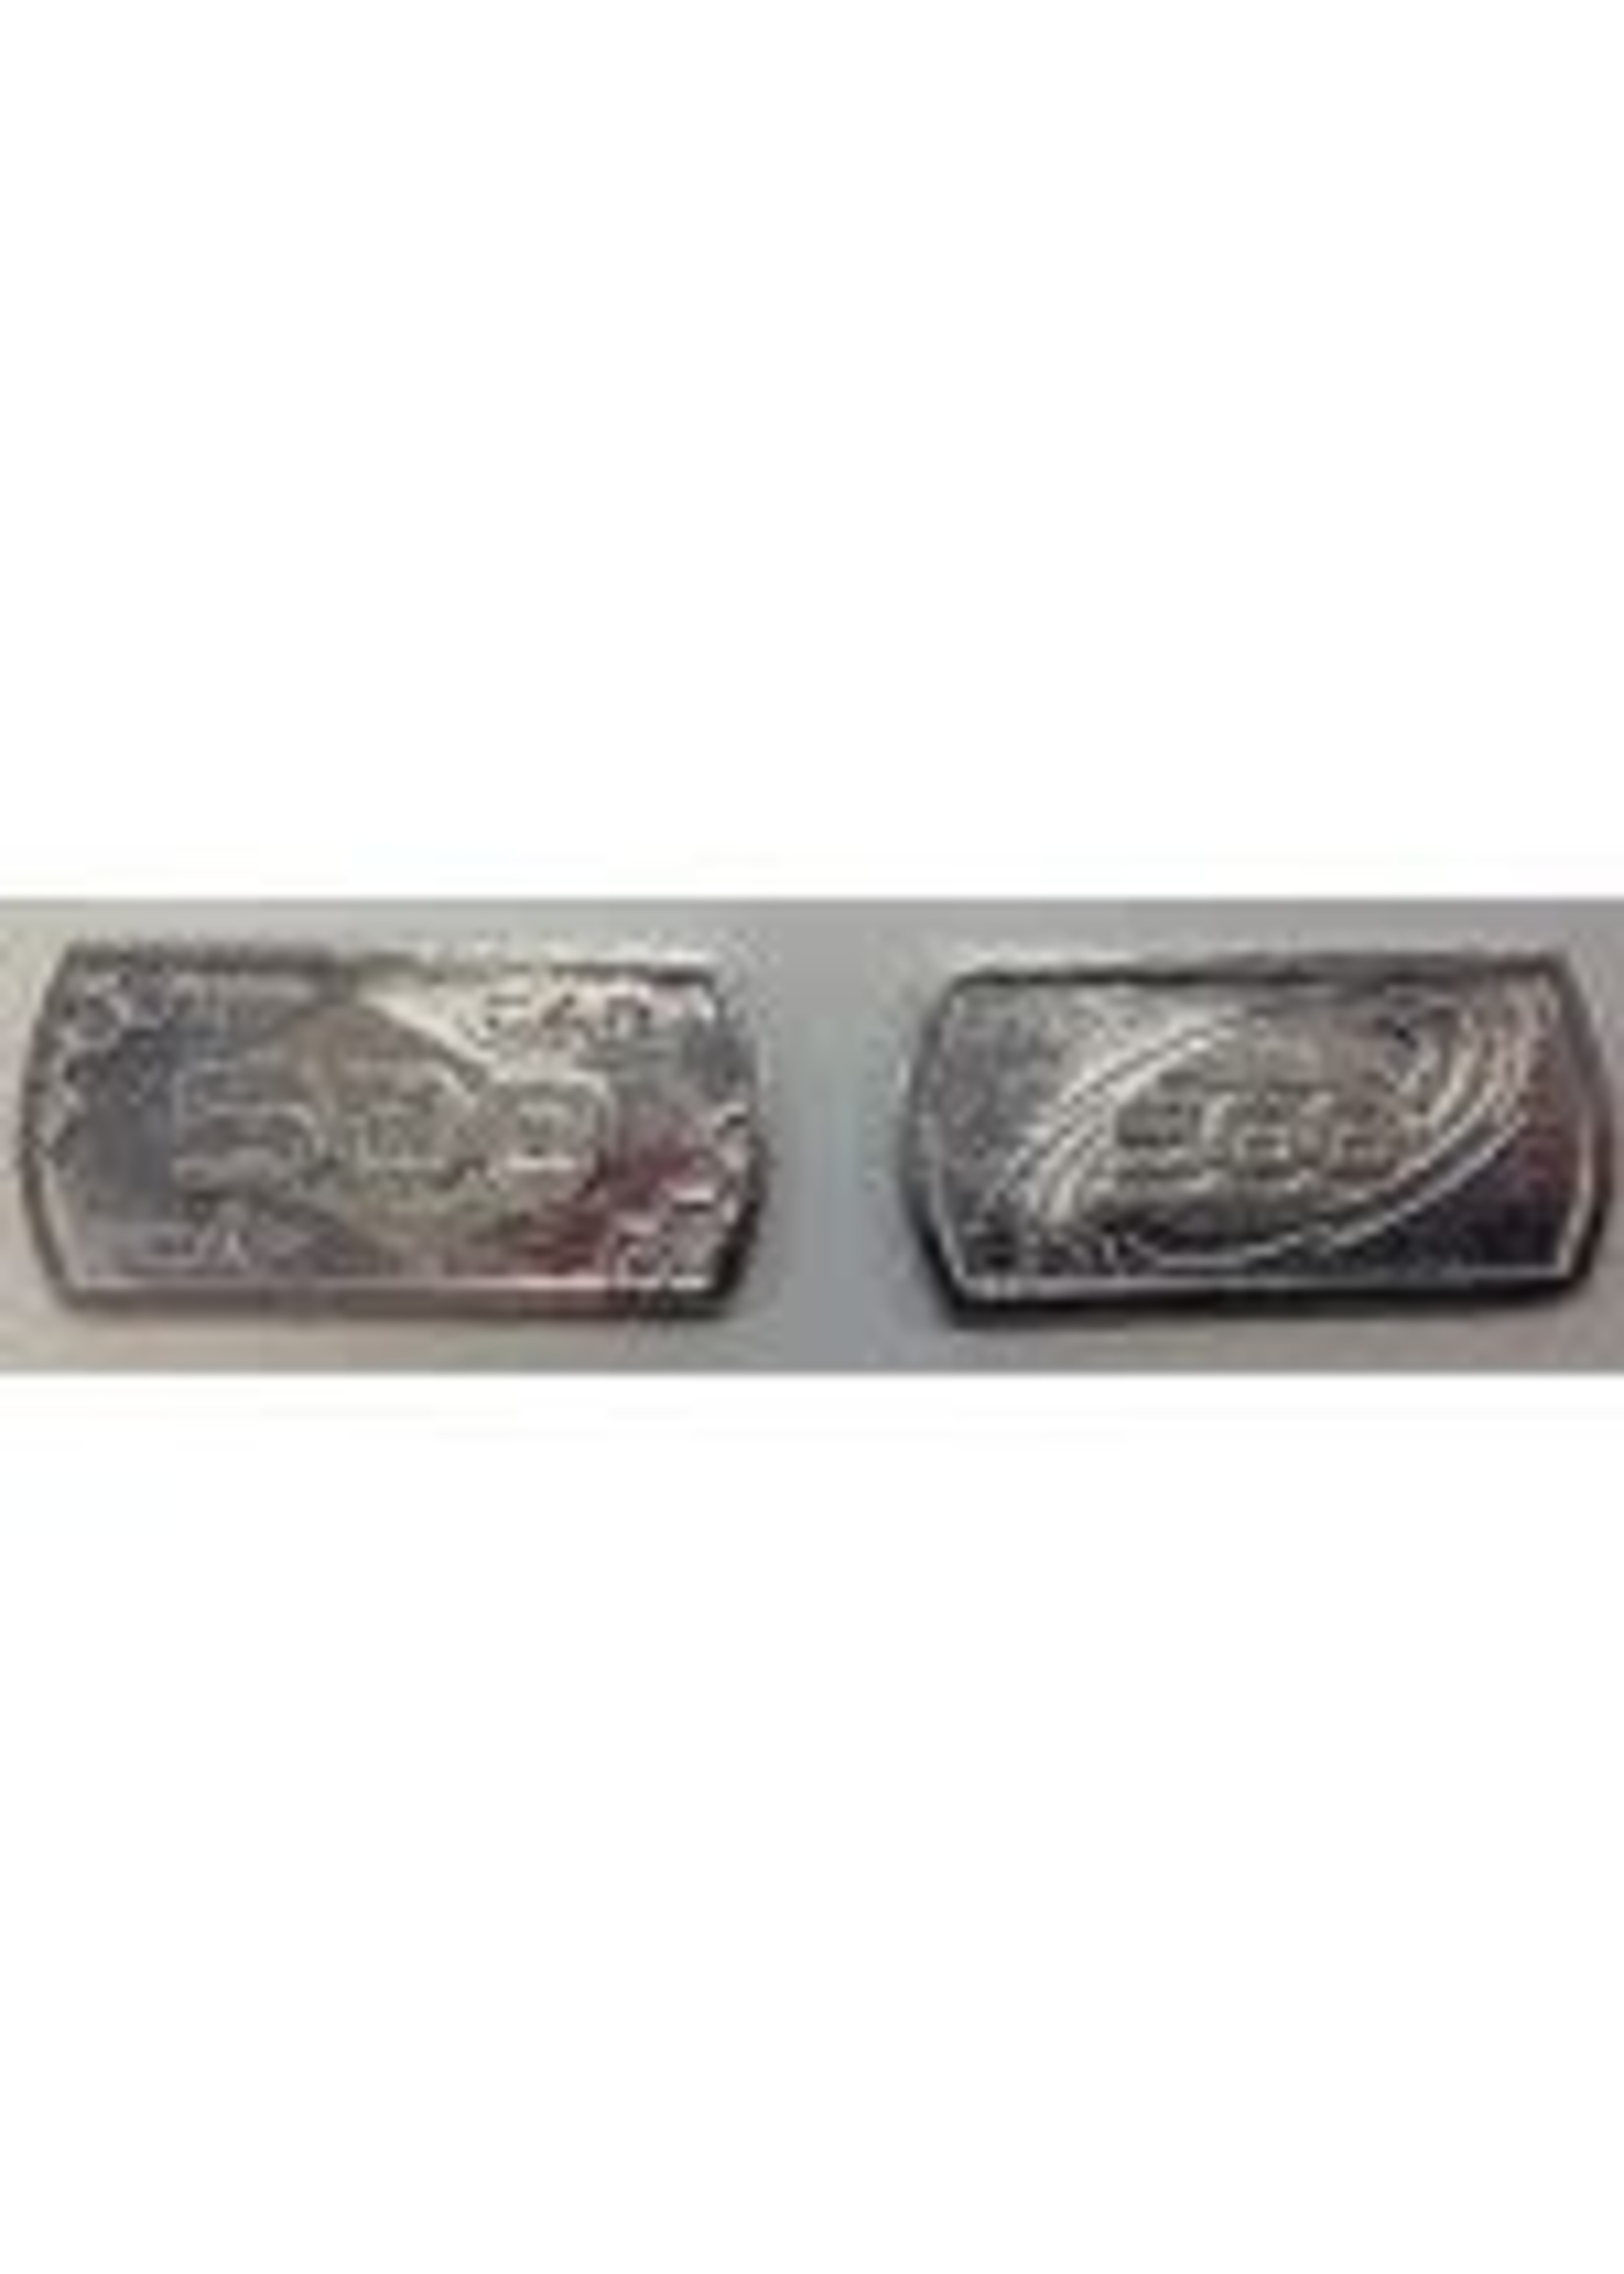 Minion Games Futuristic Metal Coins by Minion Games - 500 CAP (10x)